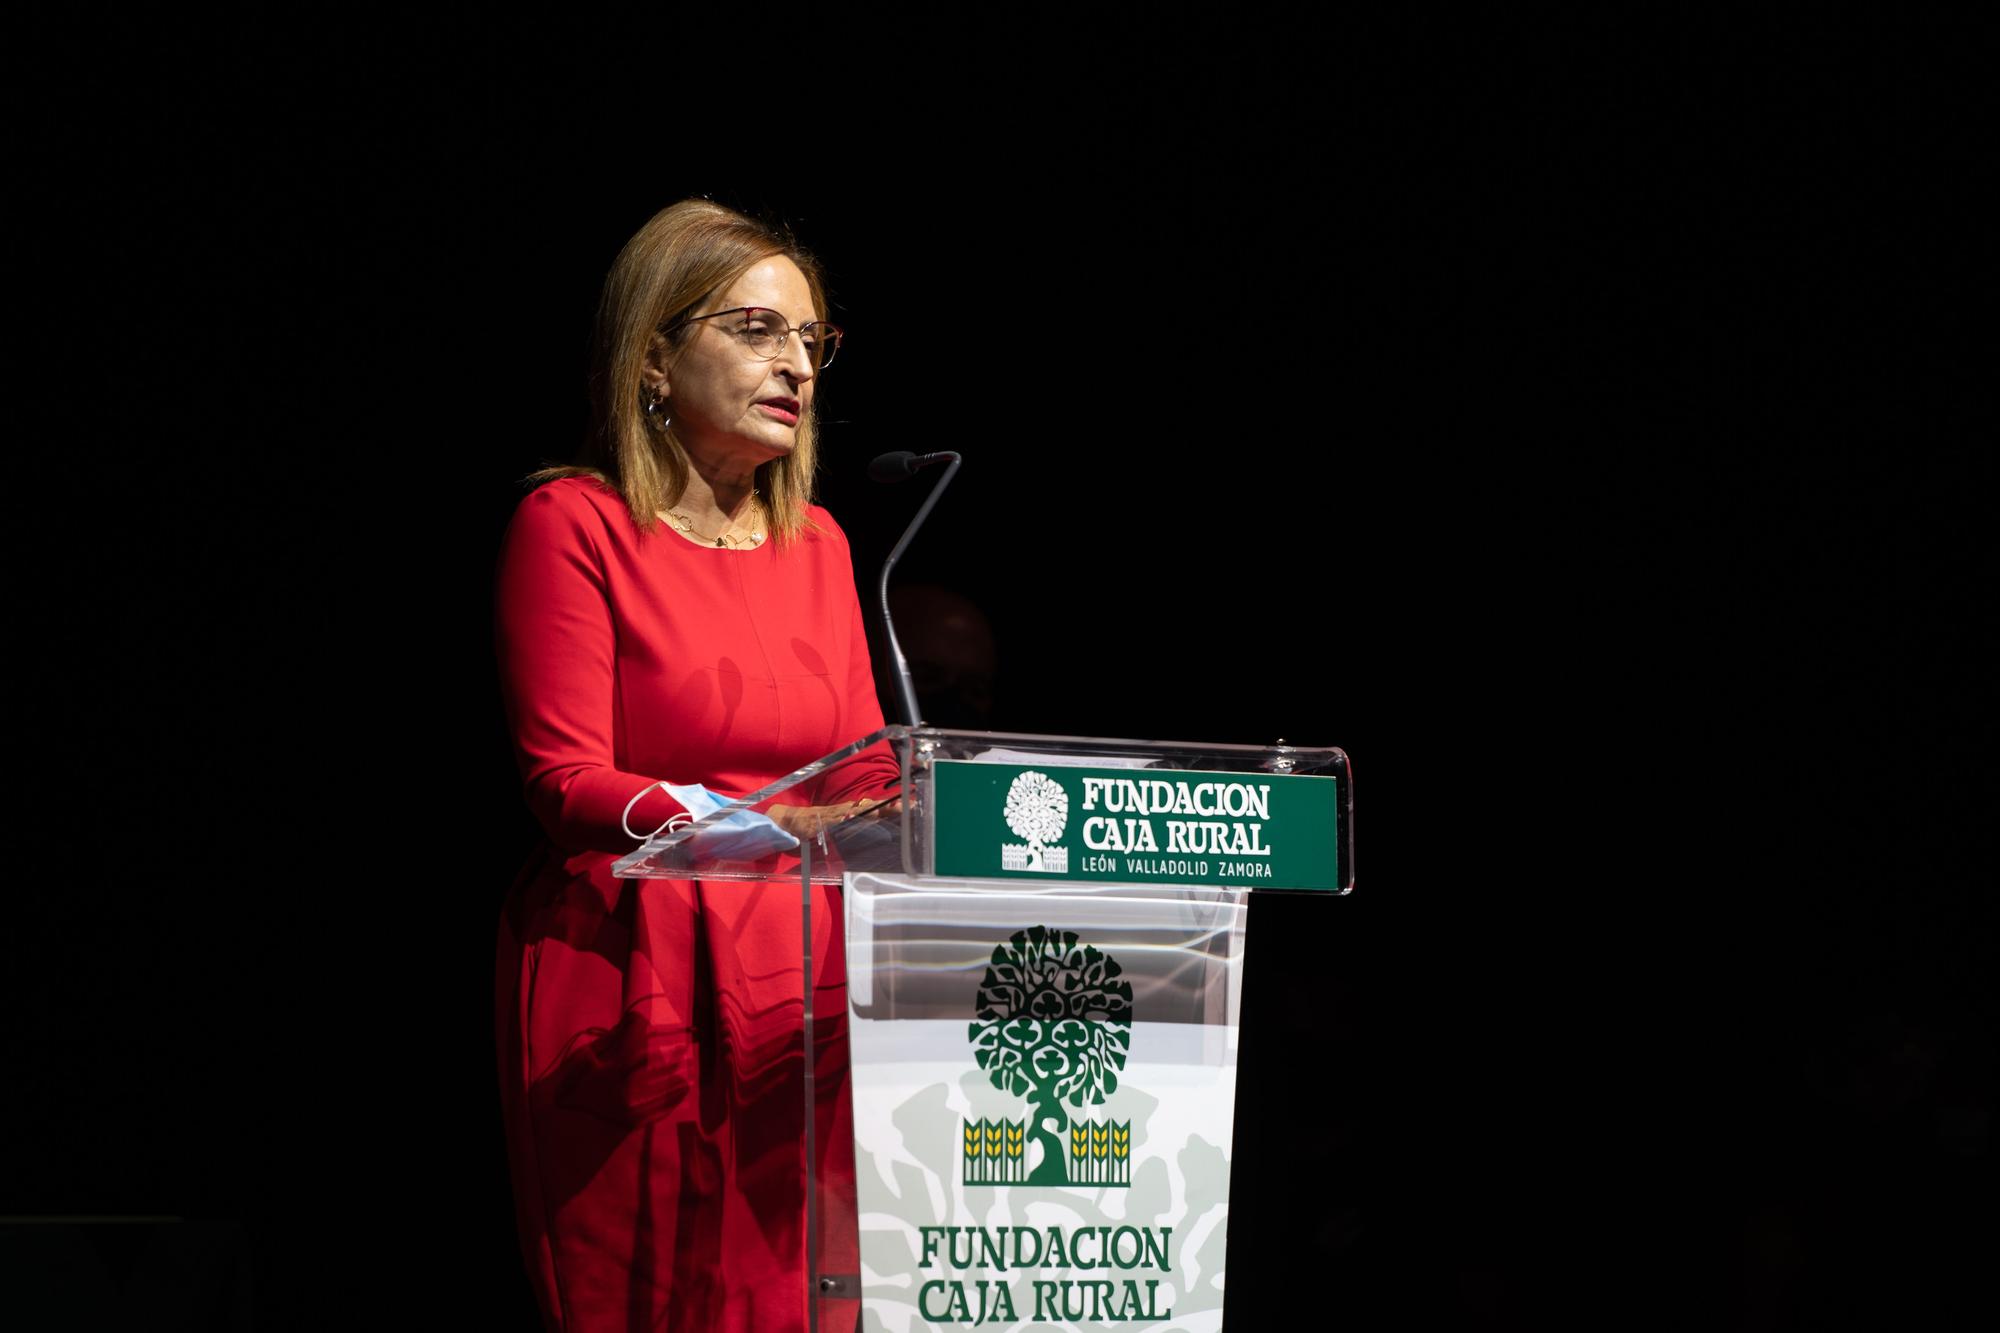 GALERÍA | Los premios de la Fundación Caja Rural, en imágenes